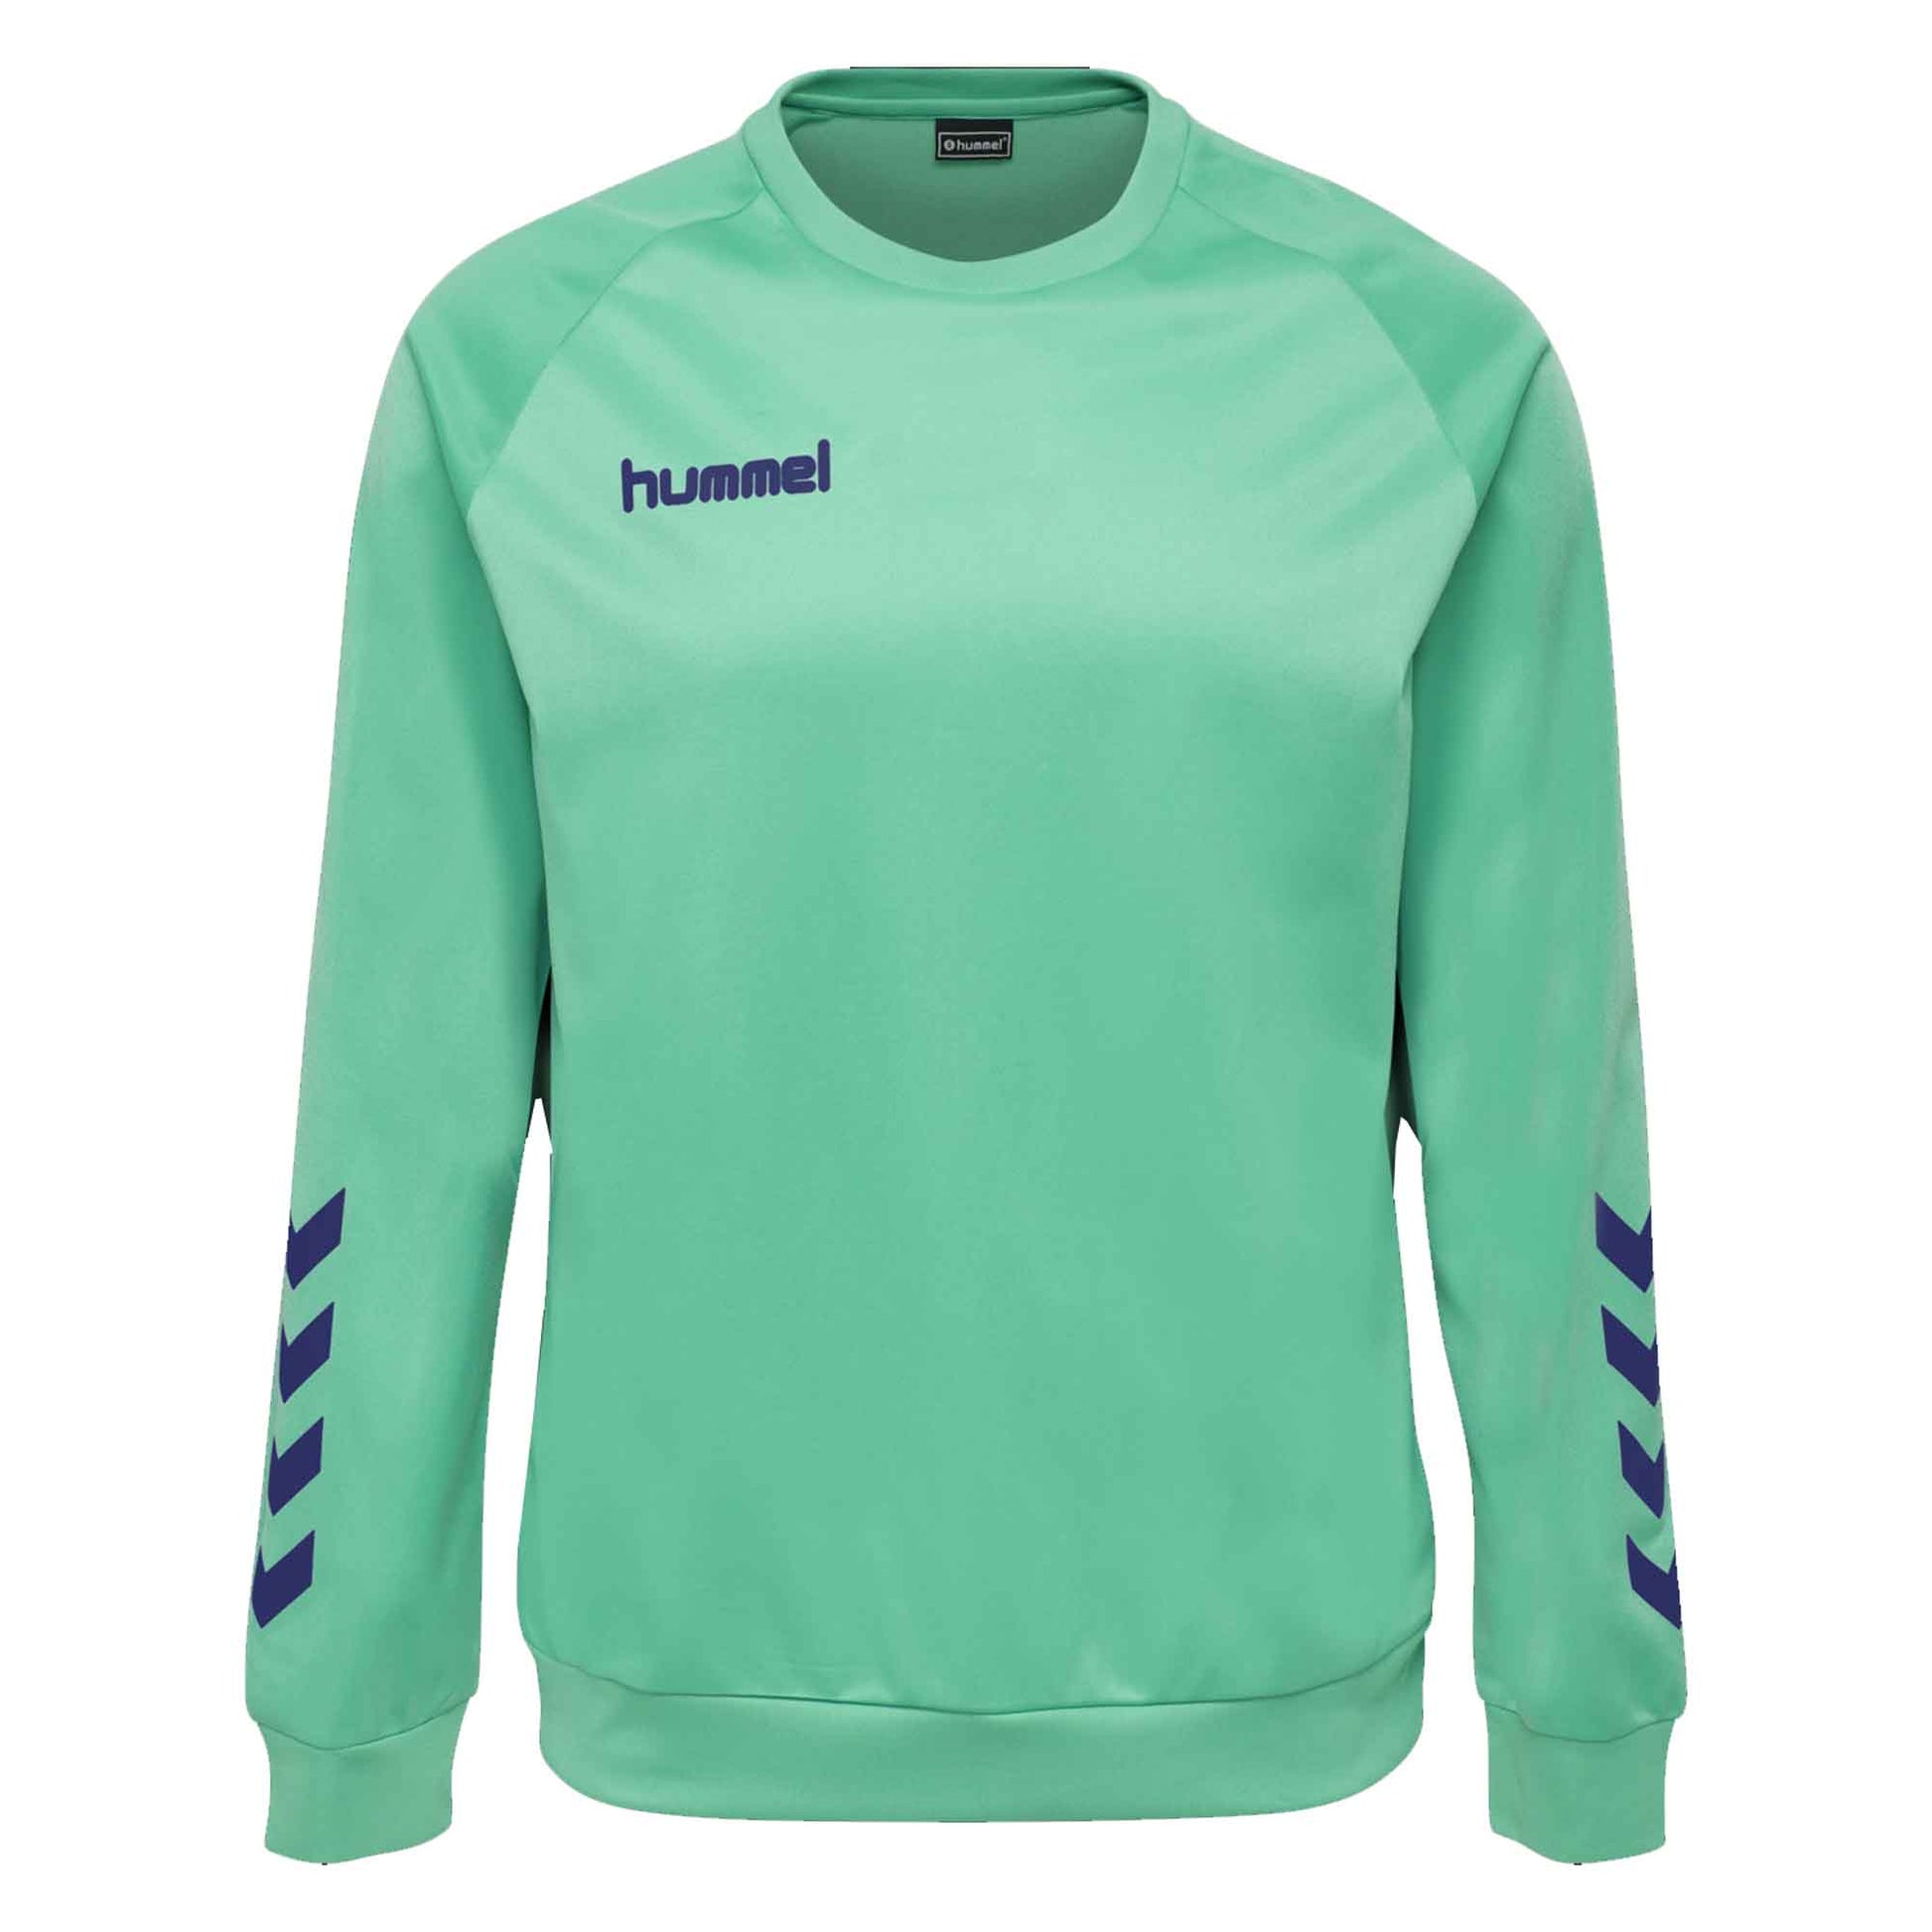 Hummel Boy's Activewear Raglan Sleeve Tee Shirt Boy's Tee Shirt HAS Apparel Turquoise 4 Years 